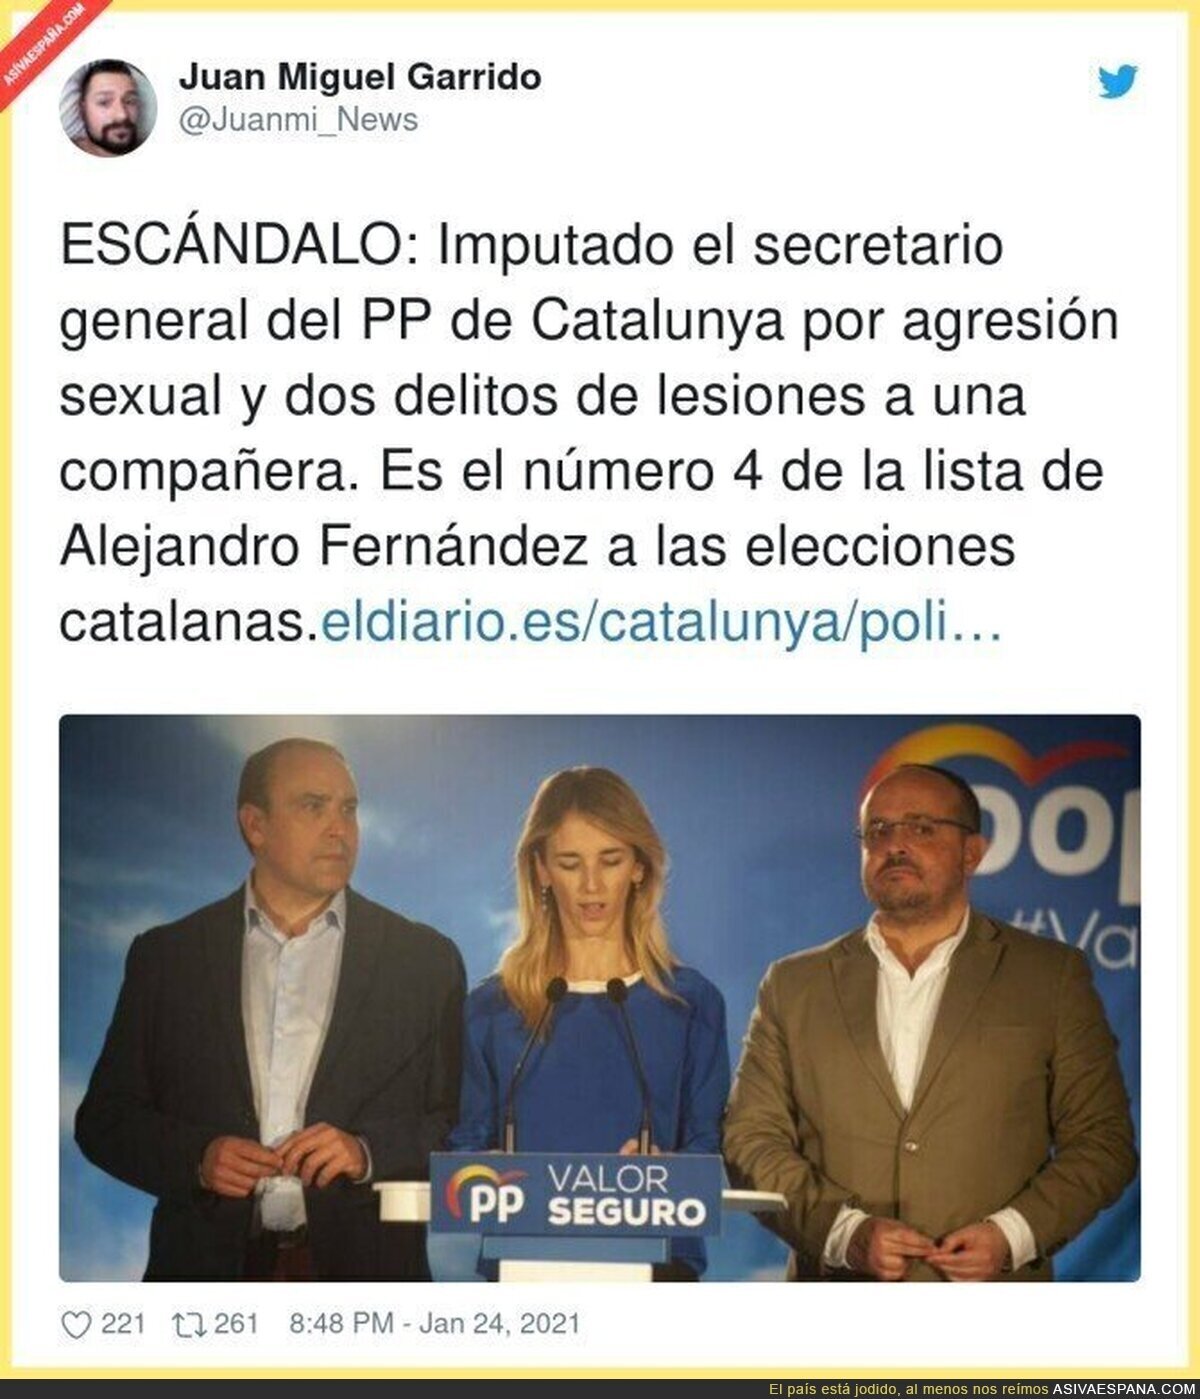 Muy grave lo del PP en Catalunya